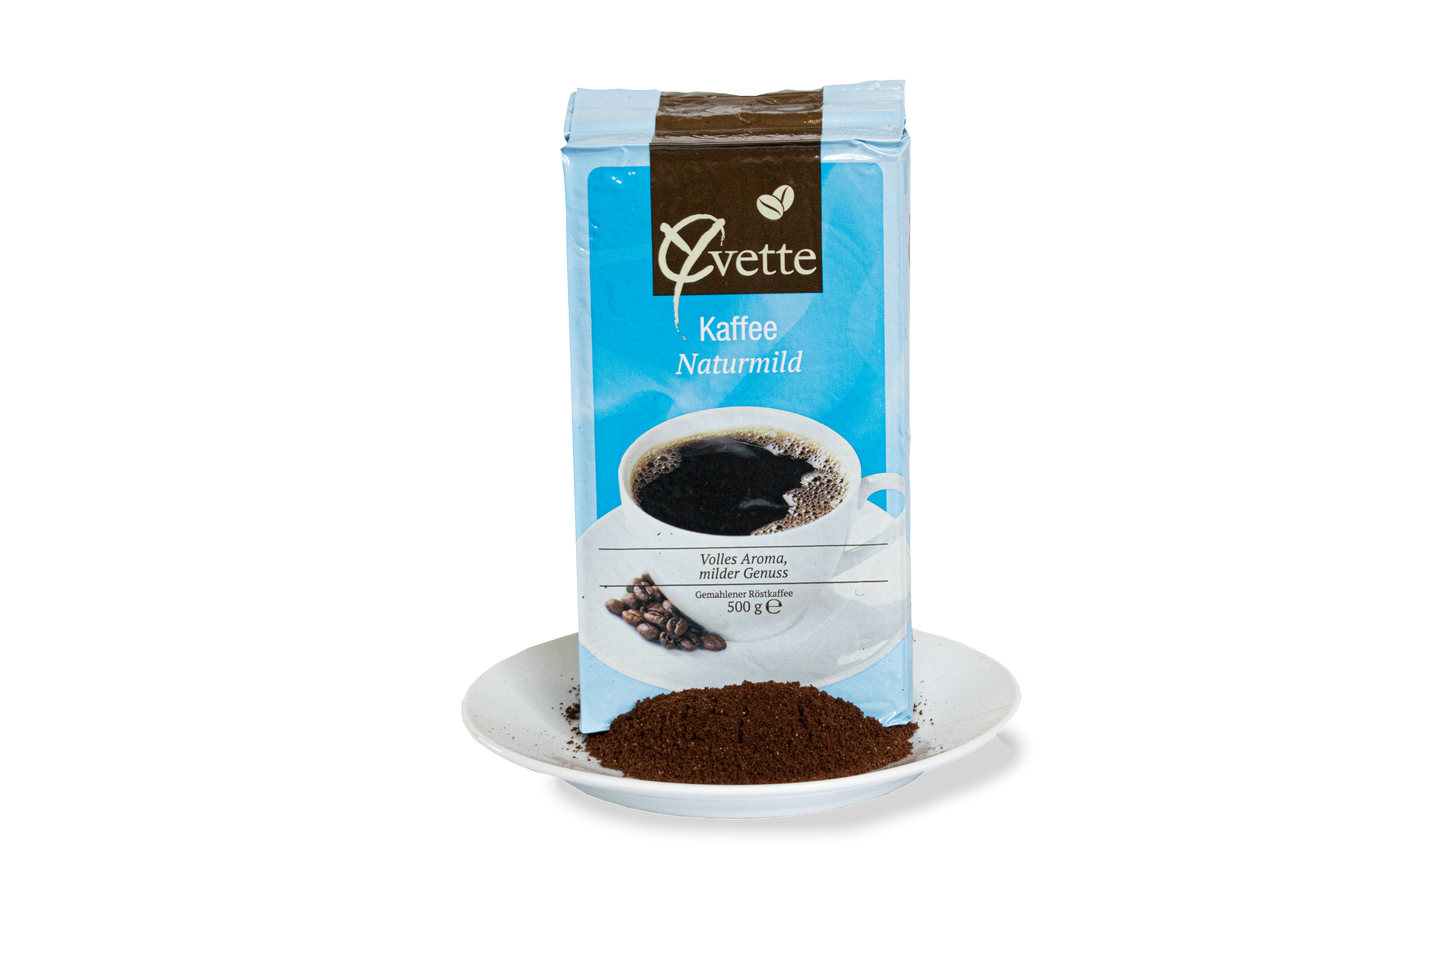 500g gemahlener Filterkaffee der Sorte Naturmild der Marke Yvette Kaffee auf einer Untertasse mit Haufen Filterkaffee als Serviervorschlag